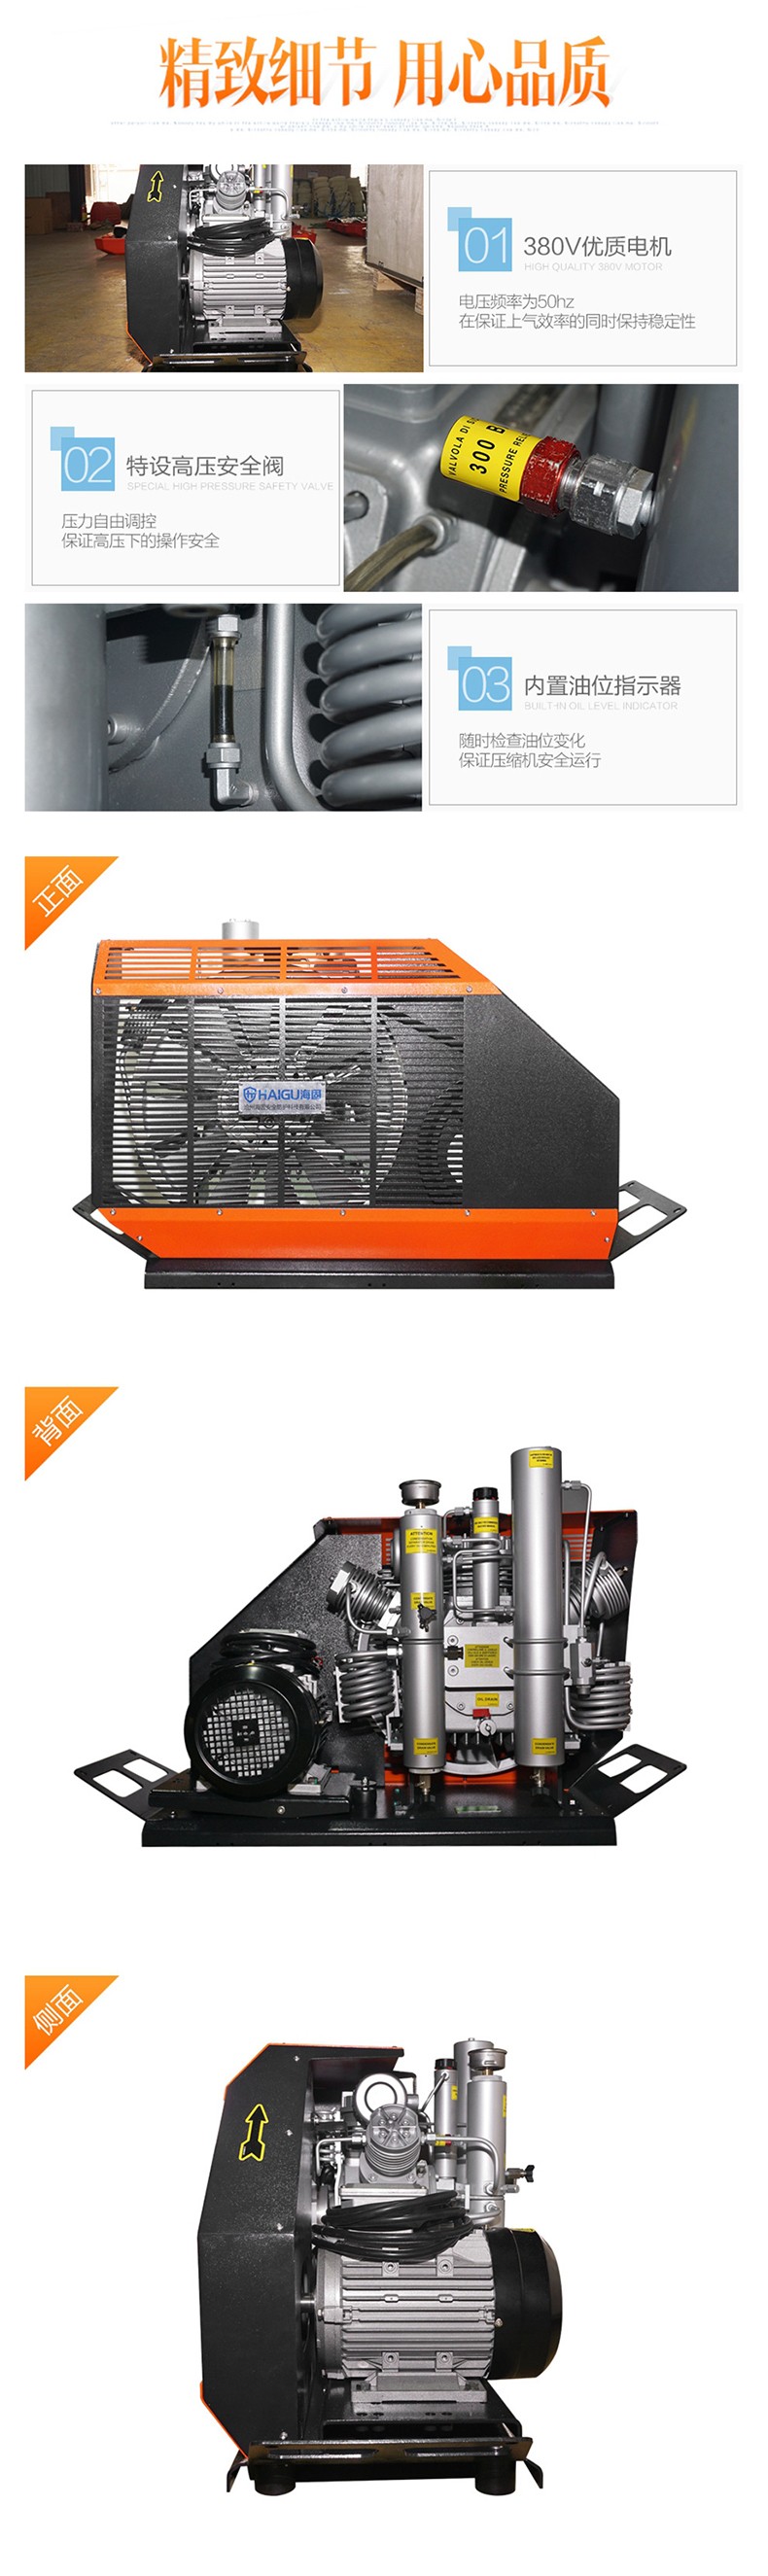 海固HG-CQ215高压呼吸空气压缩机 正压式空气呼吸器充气泵 呼吸空气压缩机图片1